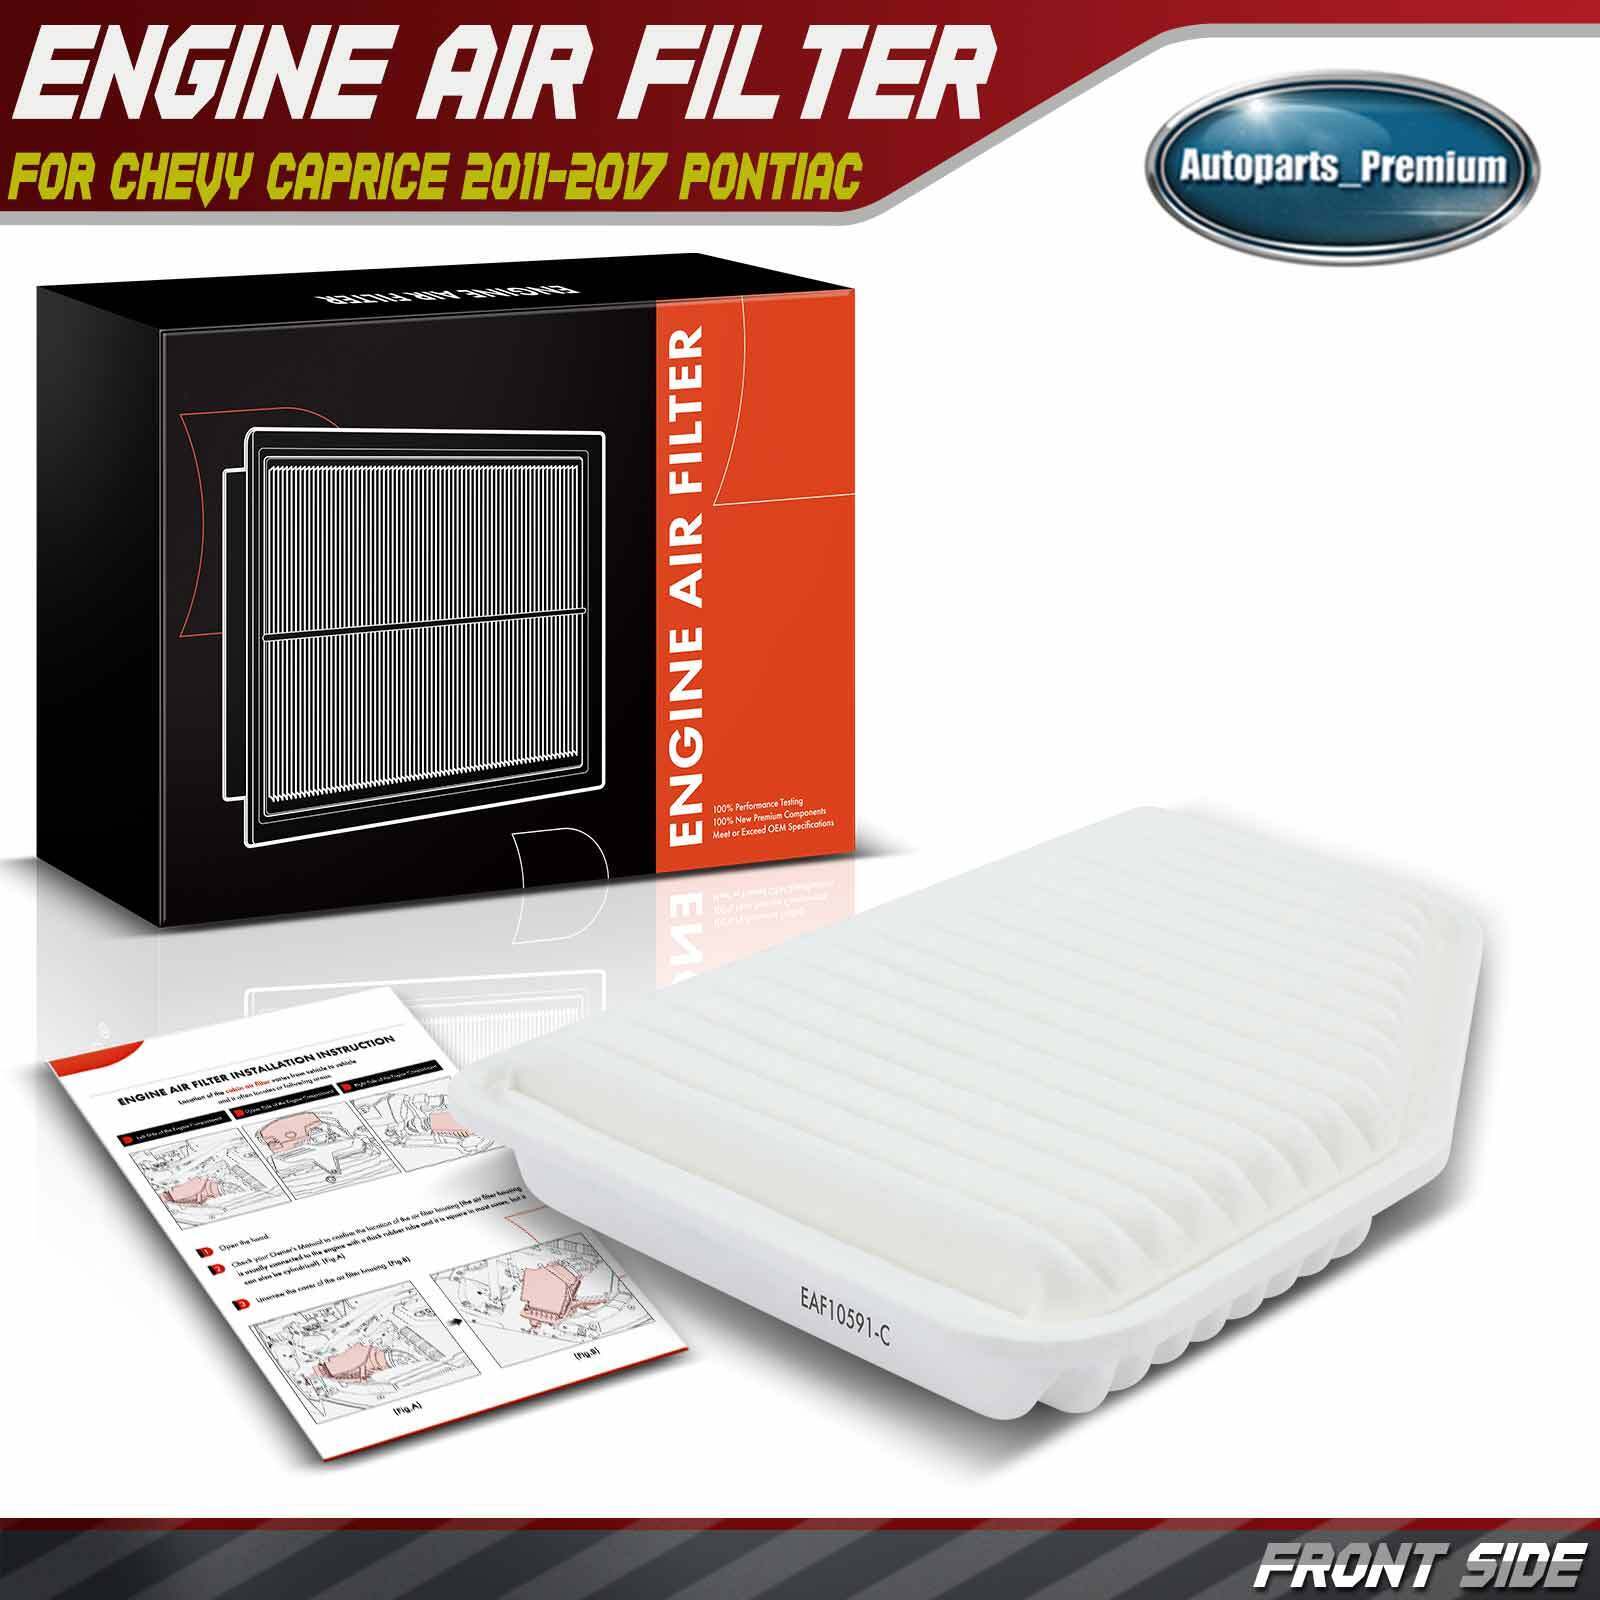 Engine Air Filter for Chevrolet Caprice 2011-2017 SS 2014-2017 Pontiac G8 08-09